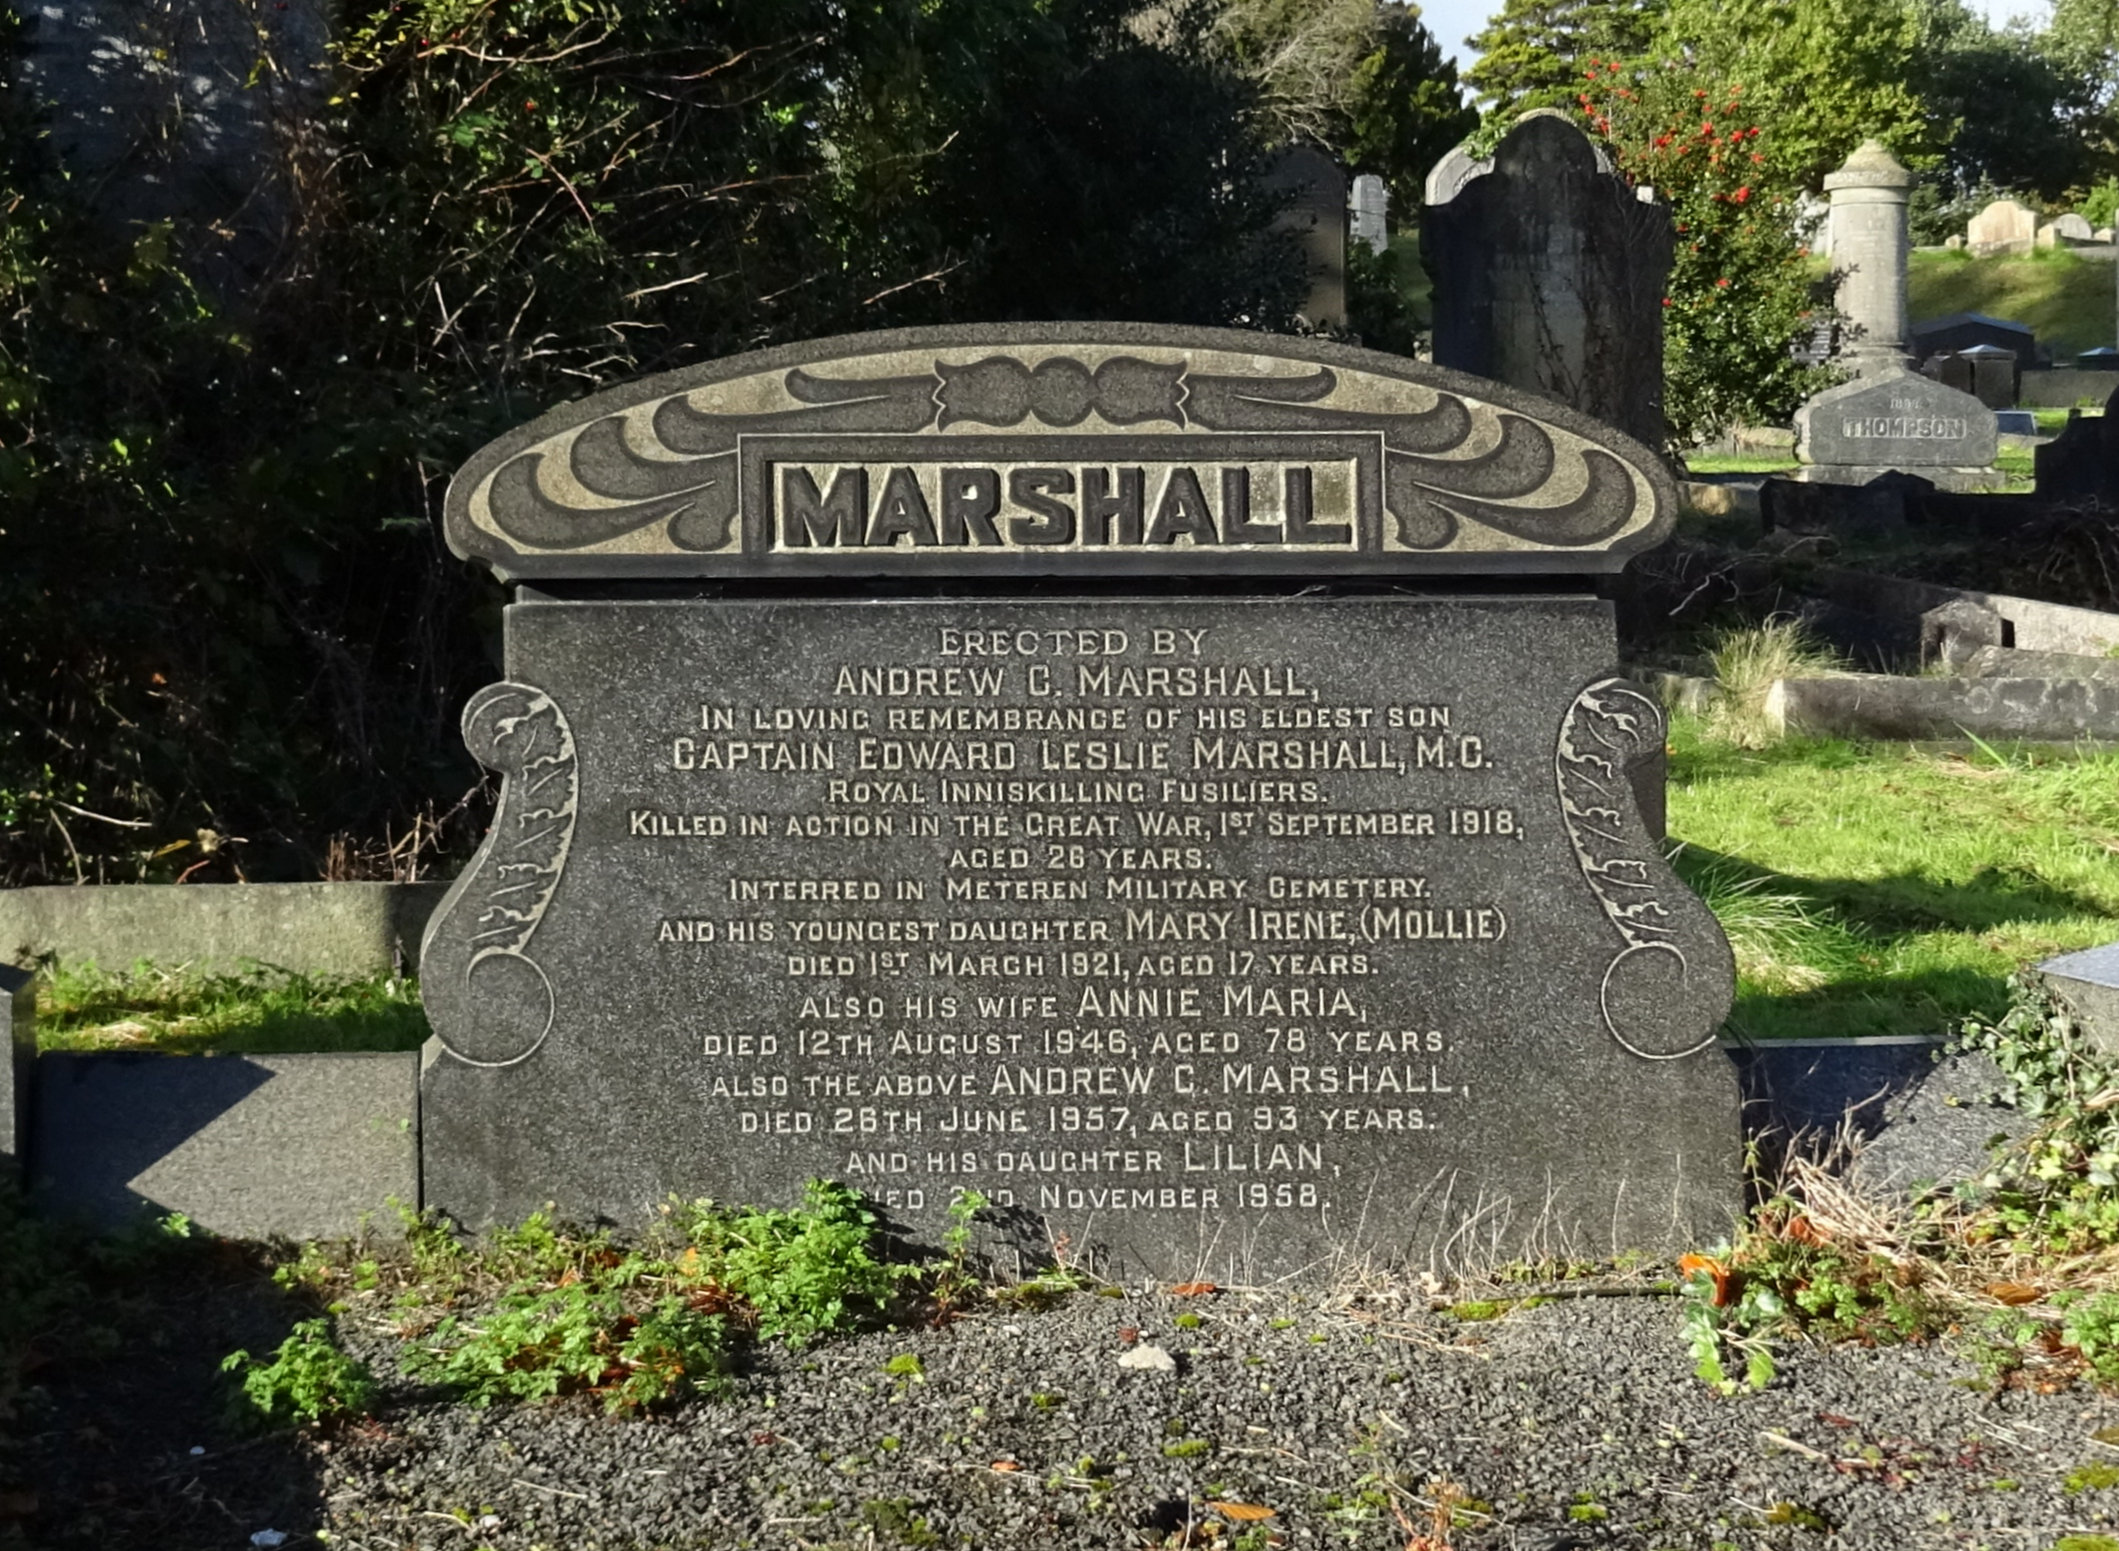 Edward Leslie Marshall